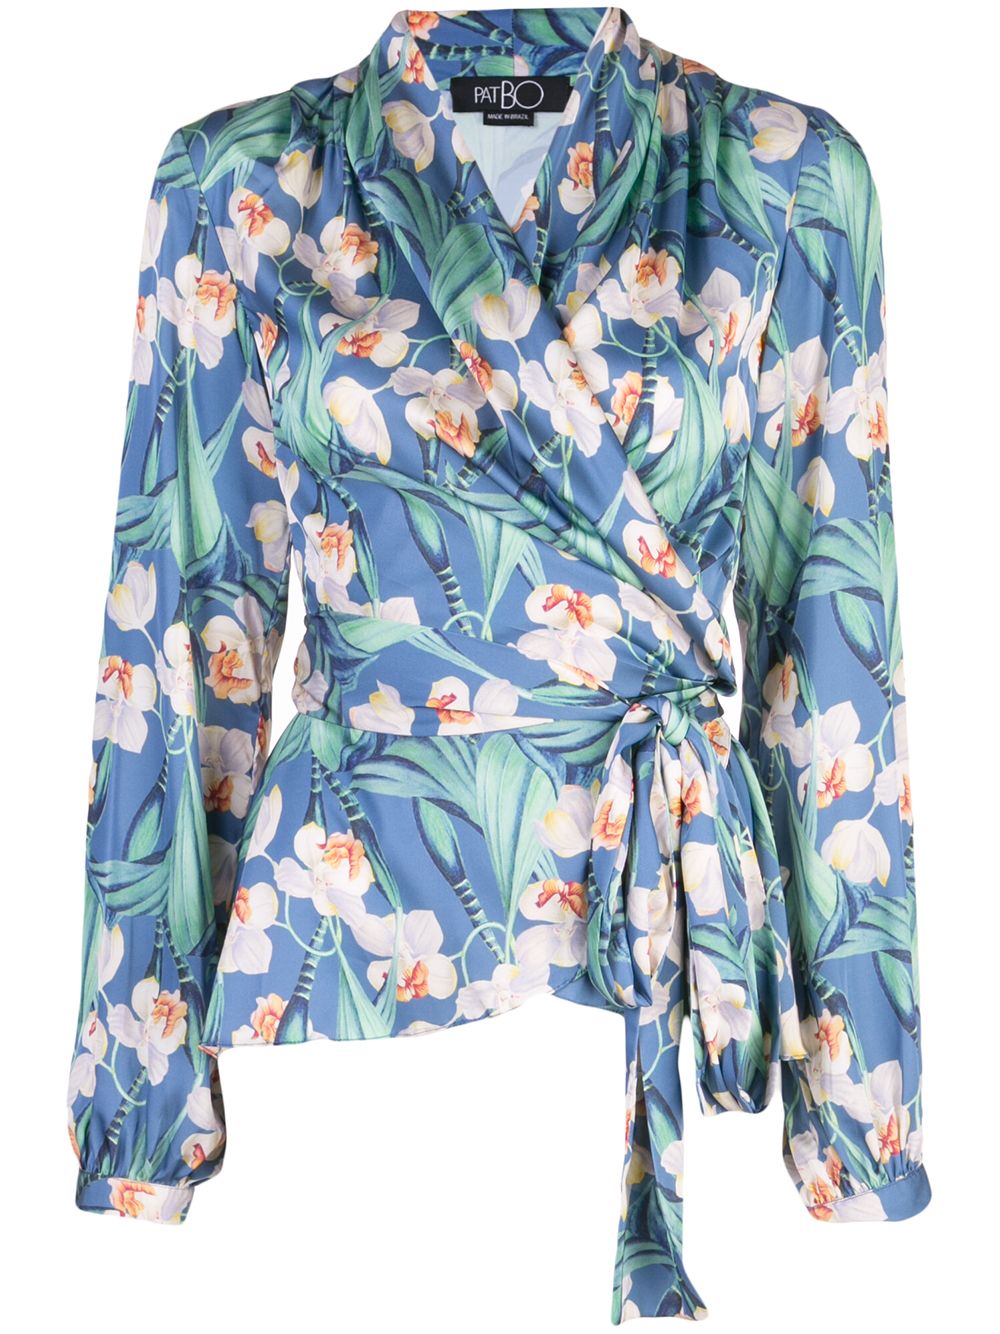 фото Patbo блузка с запахом и цветочным принтом